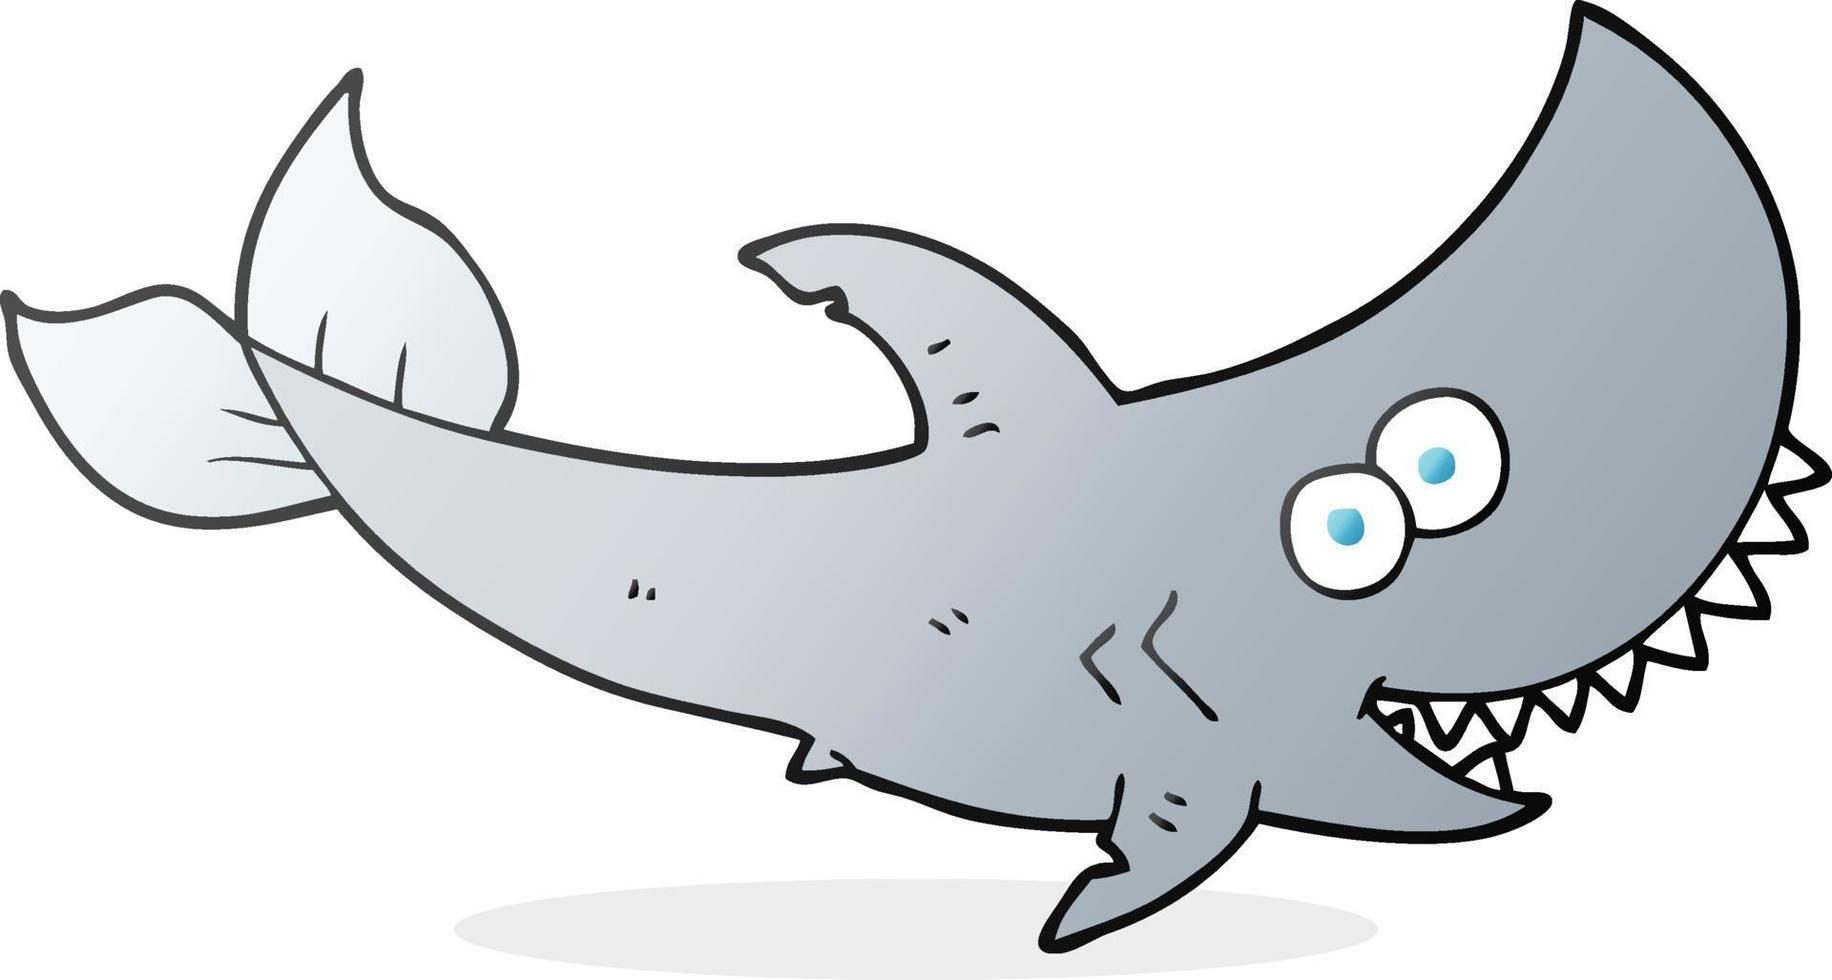 requin de dessin animé de personnage de doodle vecteur